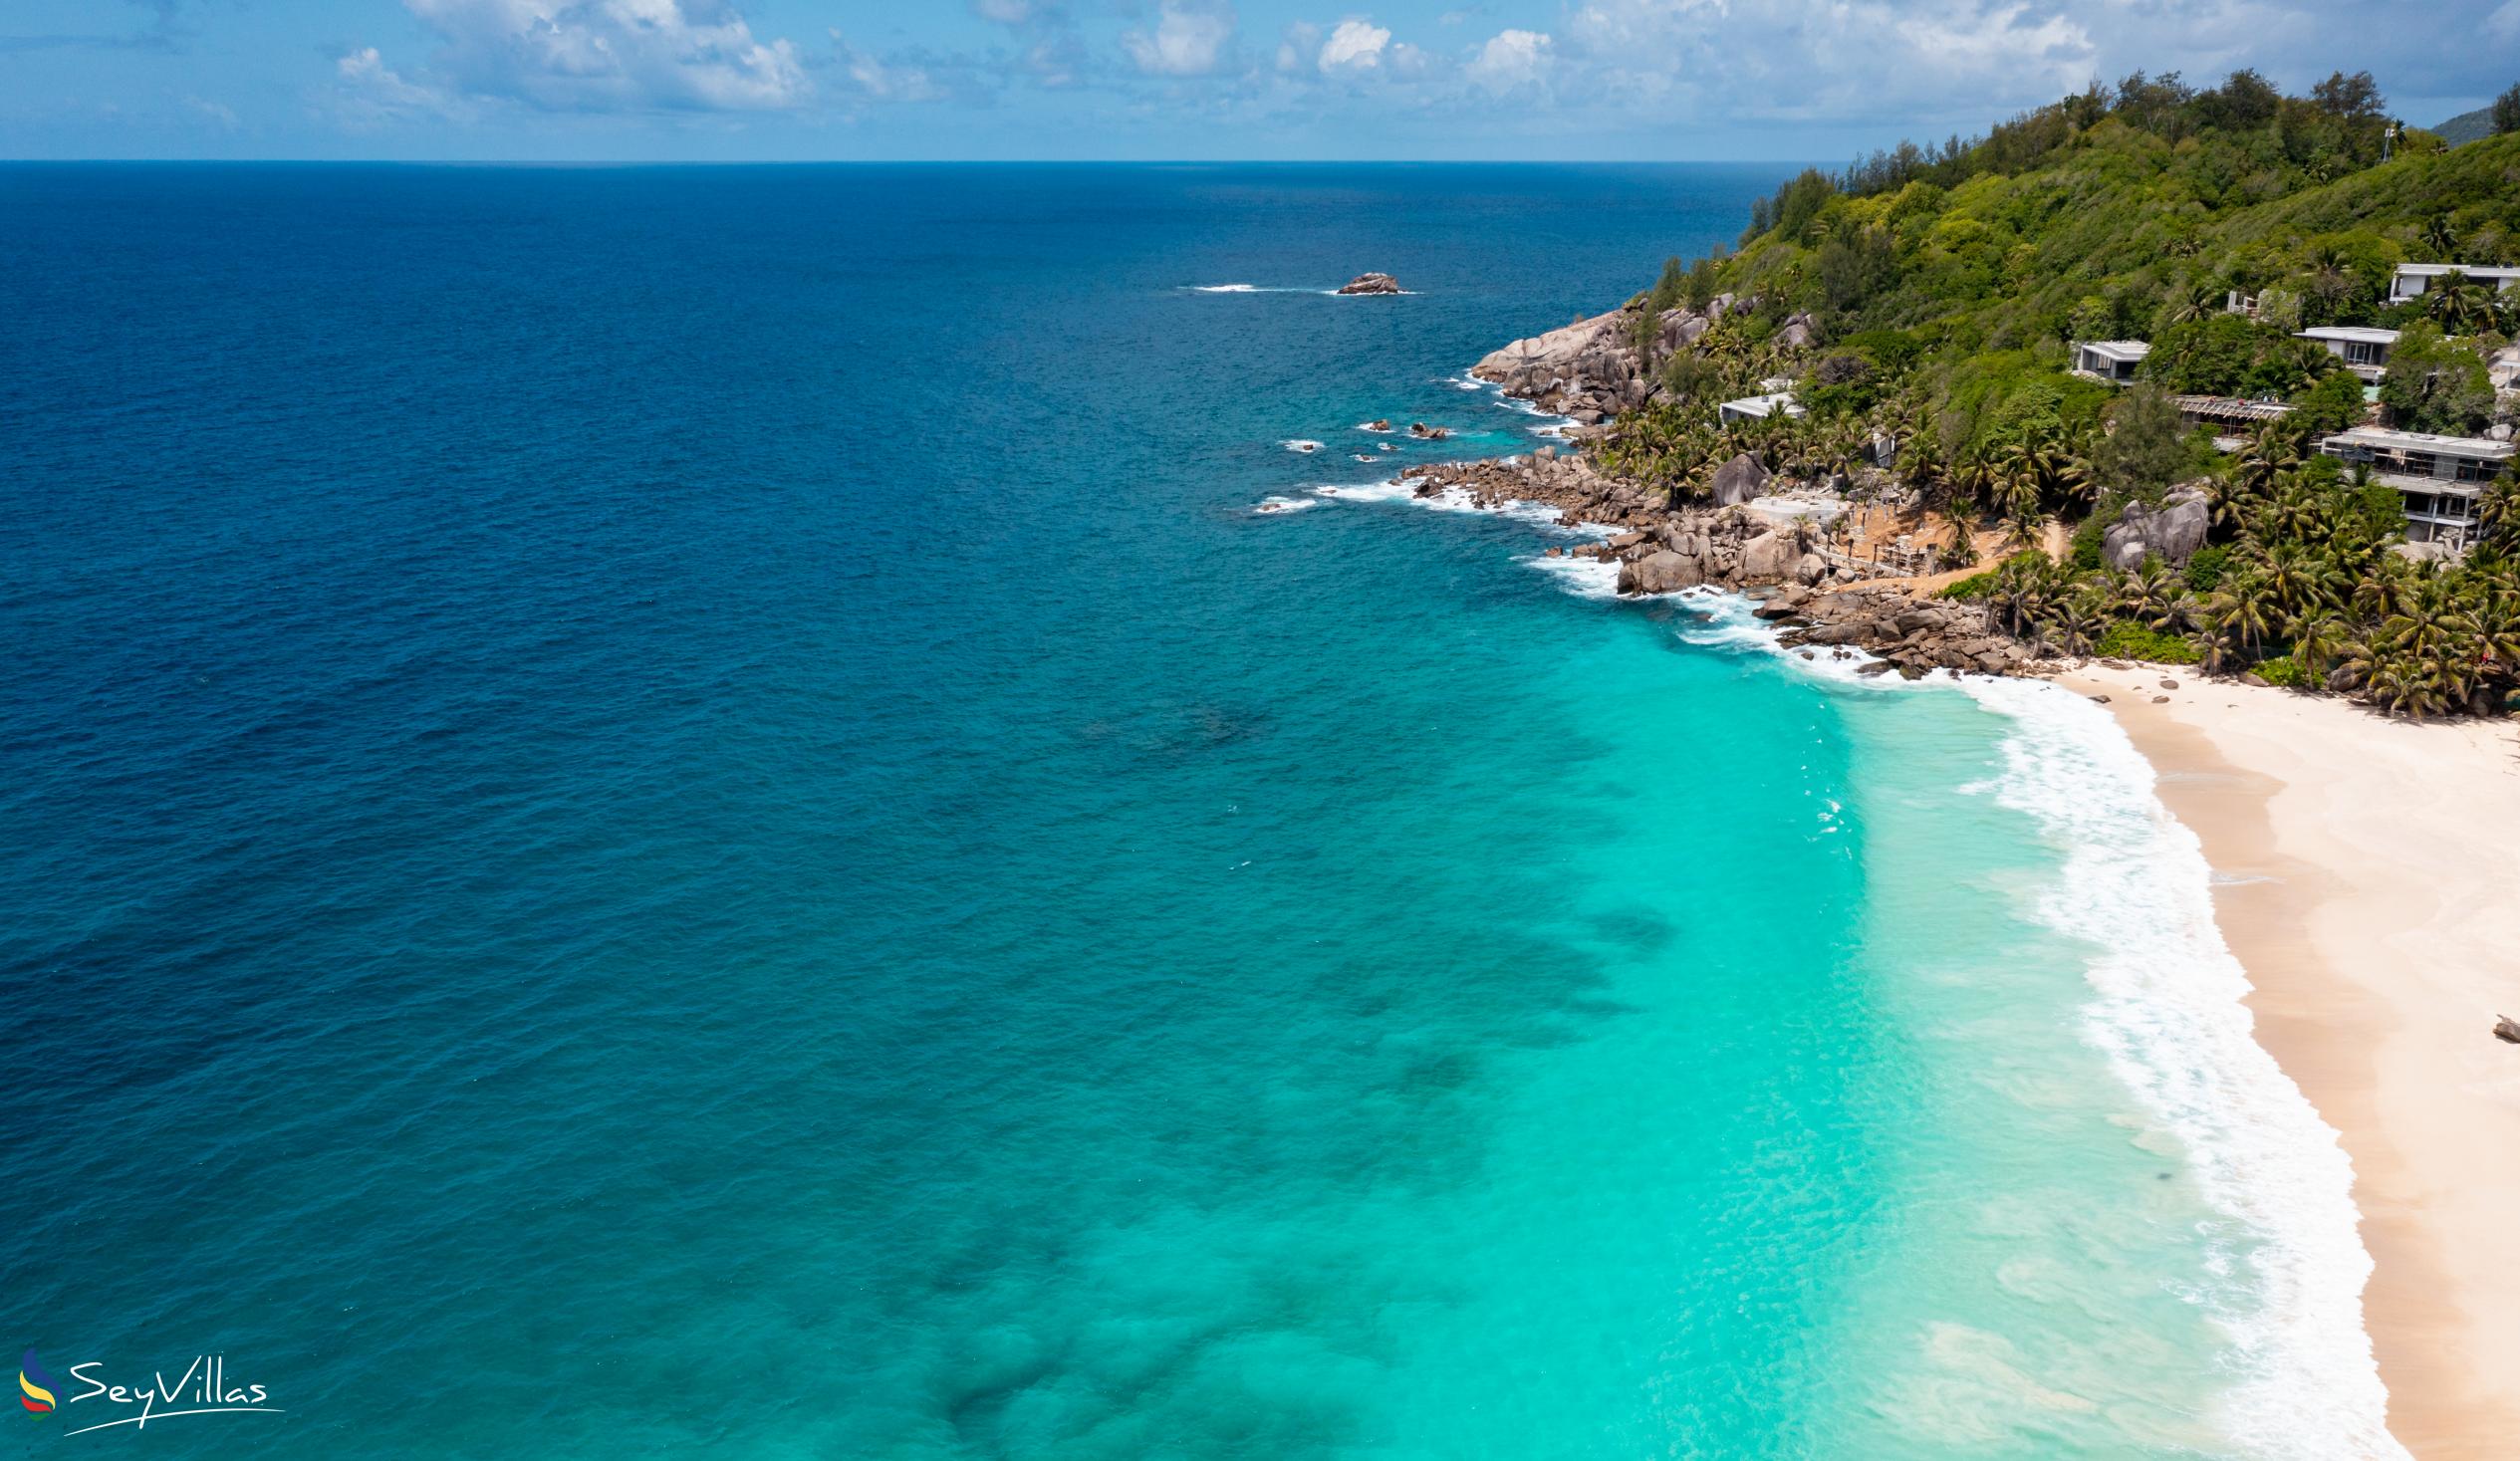 Photo 23: Takamaka Sky Villas - Location - Mahé (Seychelles)